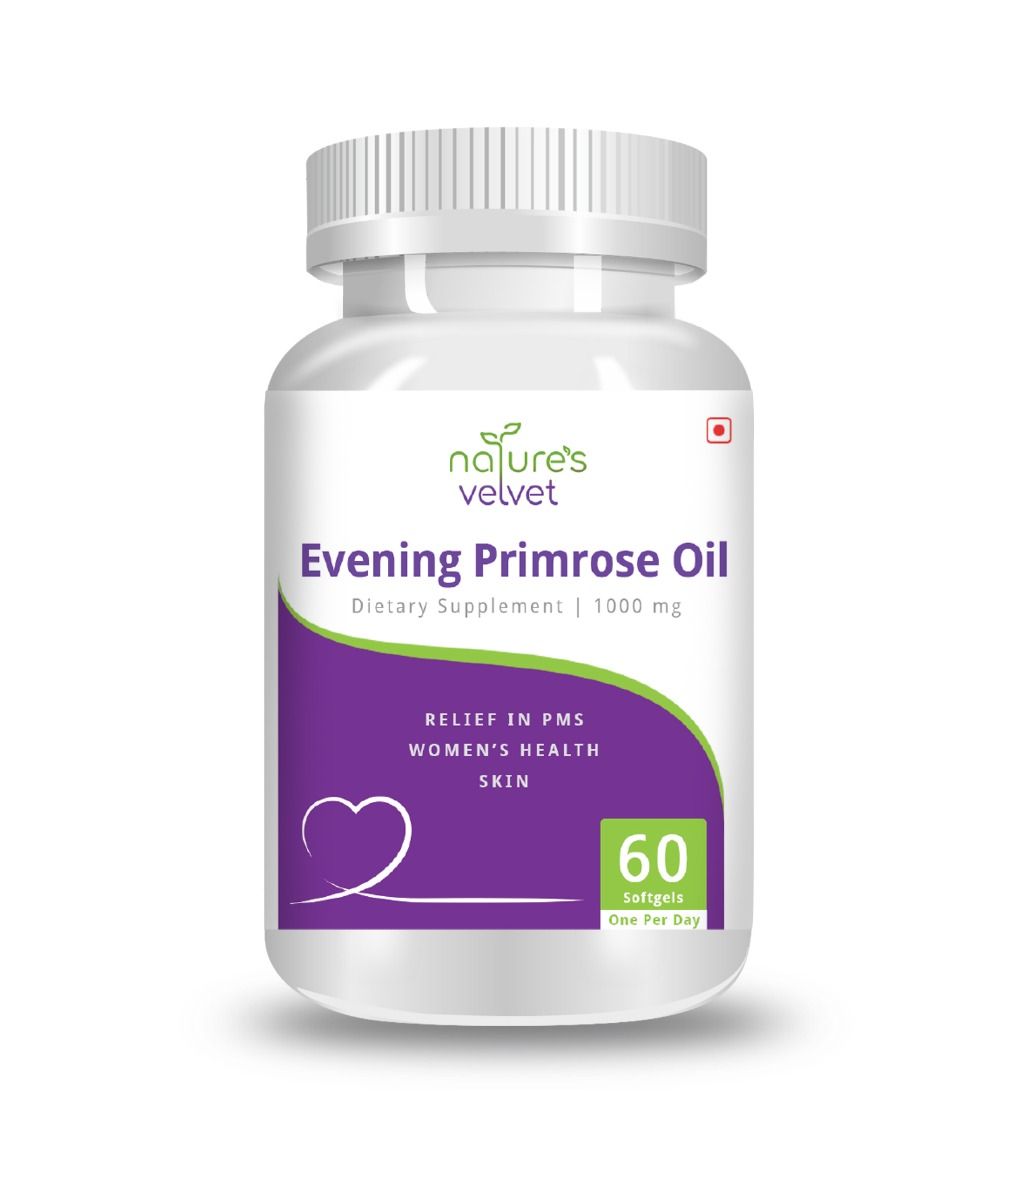 Buy Nature's Velvet Evening Primrose Oil 1000 mg, 60 Softgels Online